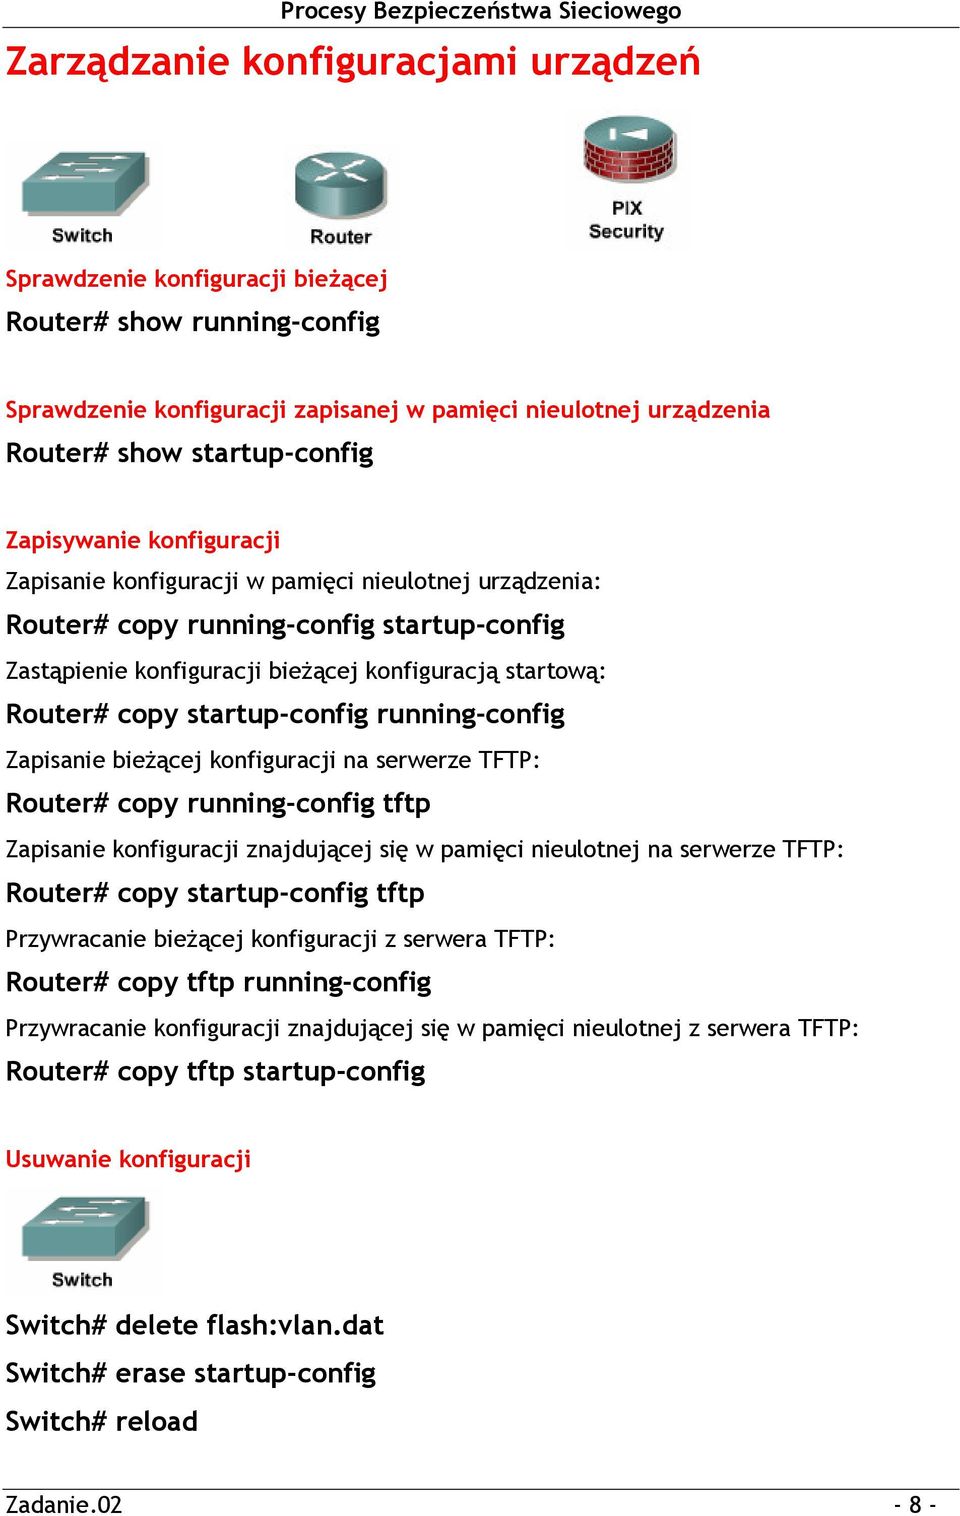 startup-config running-config Zapisanie bieżącej konfiguracji na serwerze TFTP: Router# copy running-config tftp Zapisanie konfiguracji znajdującej się w pamięci nieulotnej na serwerze TFTP: Router#